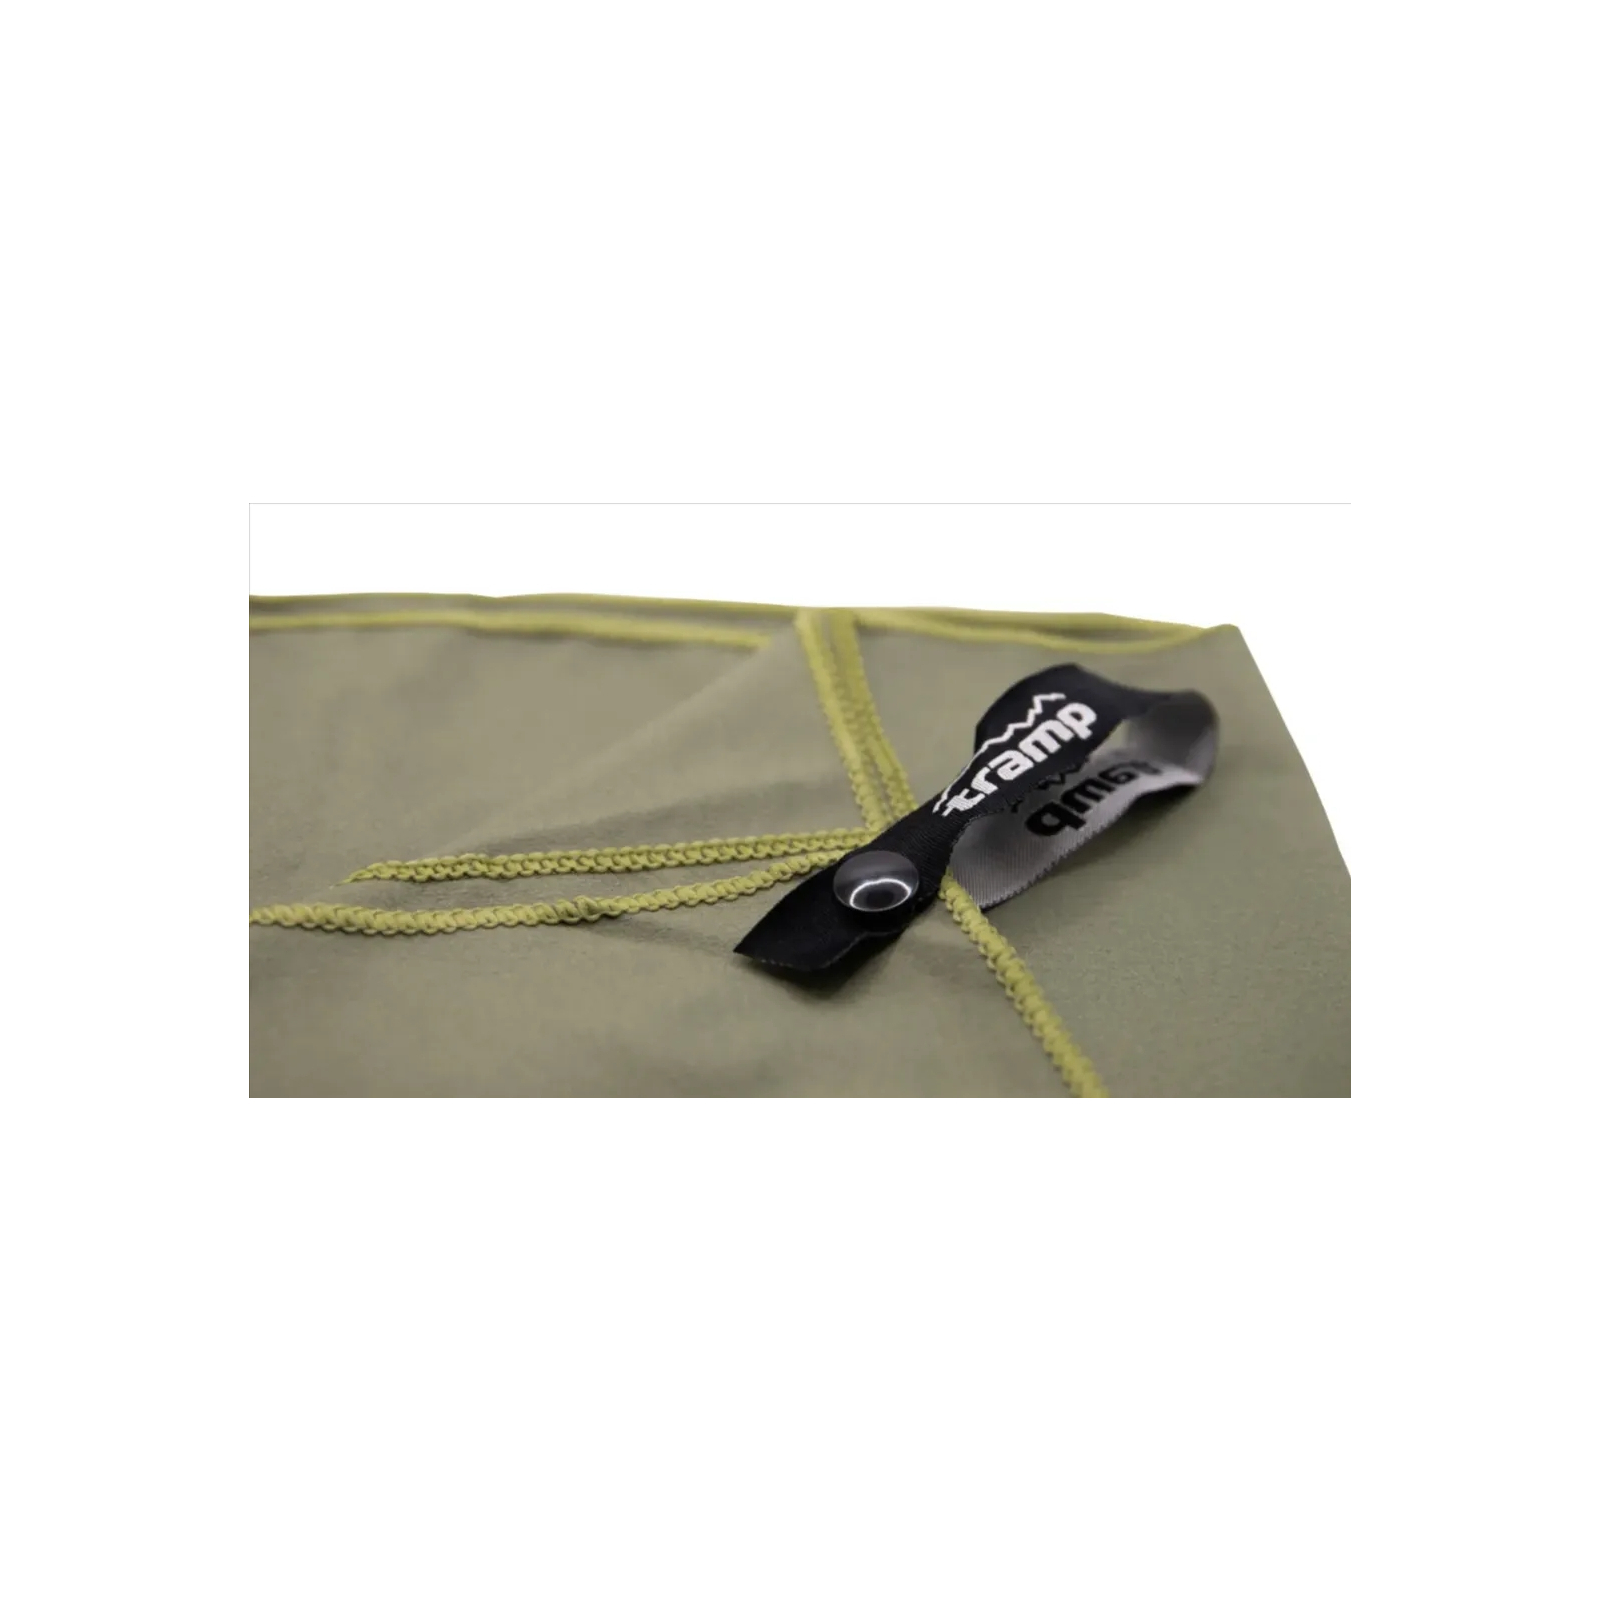 Рушник Tramp з мікрофібри в чохлі Pocket Towel 40х80 S Army green (UTRA-161-S-army-green) зображення 5